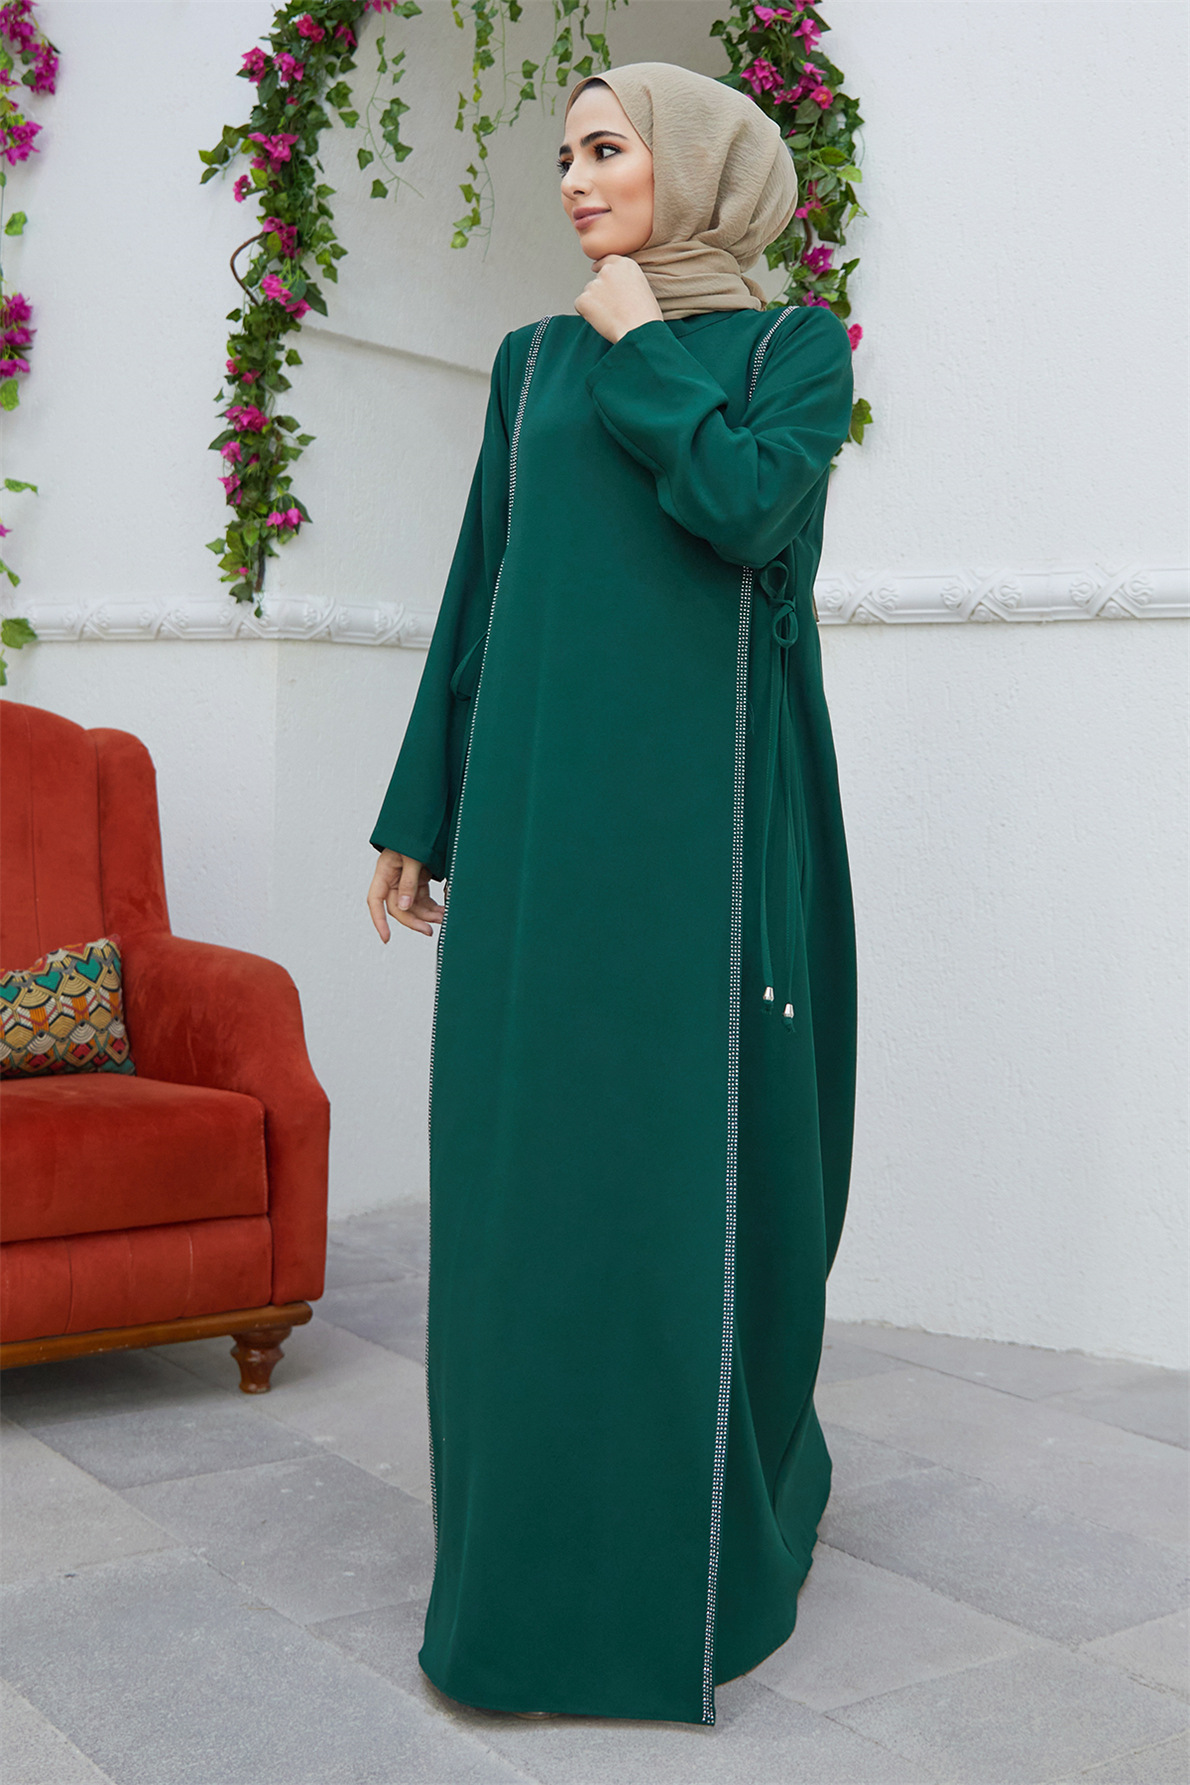 中东迪拜裙阿拉伯沙特回族长袍烫钻束腰连衣裙女 girdling robe-图2